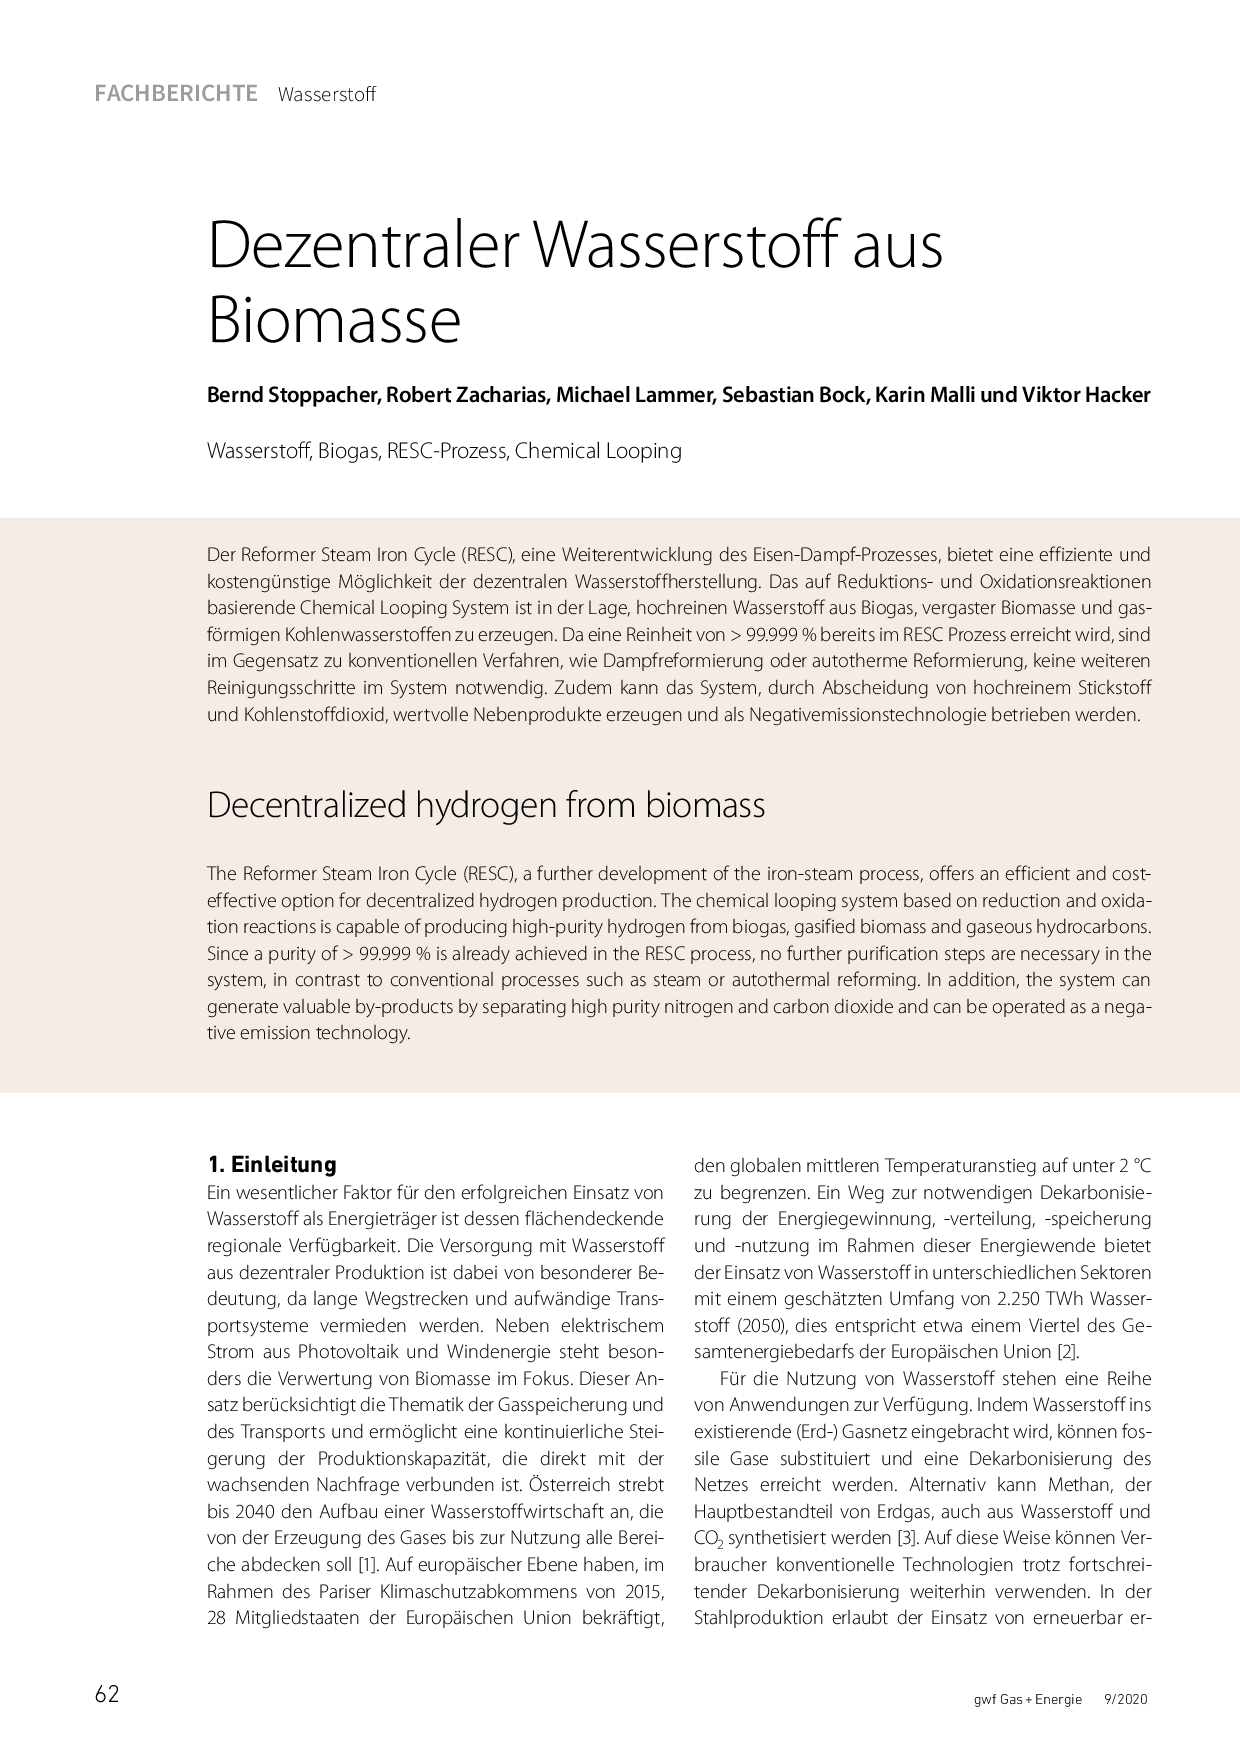 Dezentraler Wasserstoff aus Biomasse